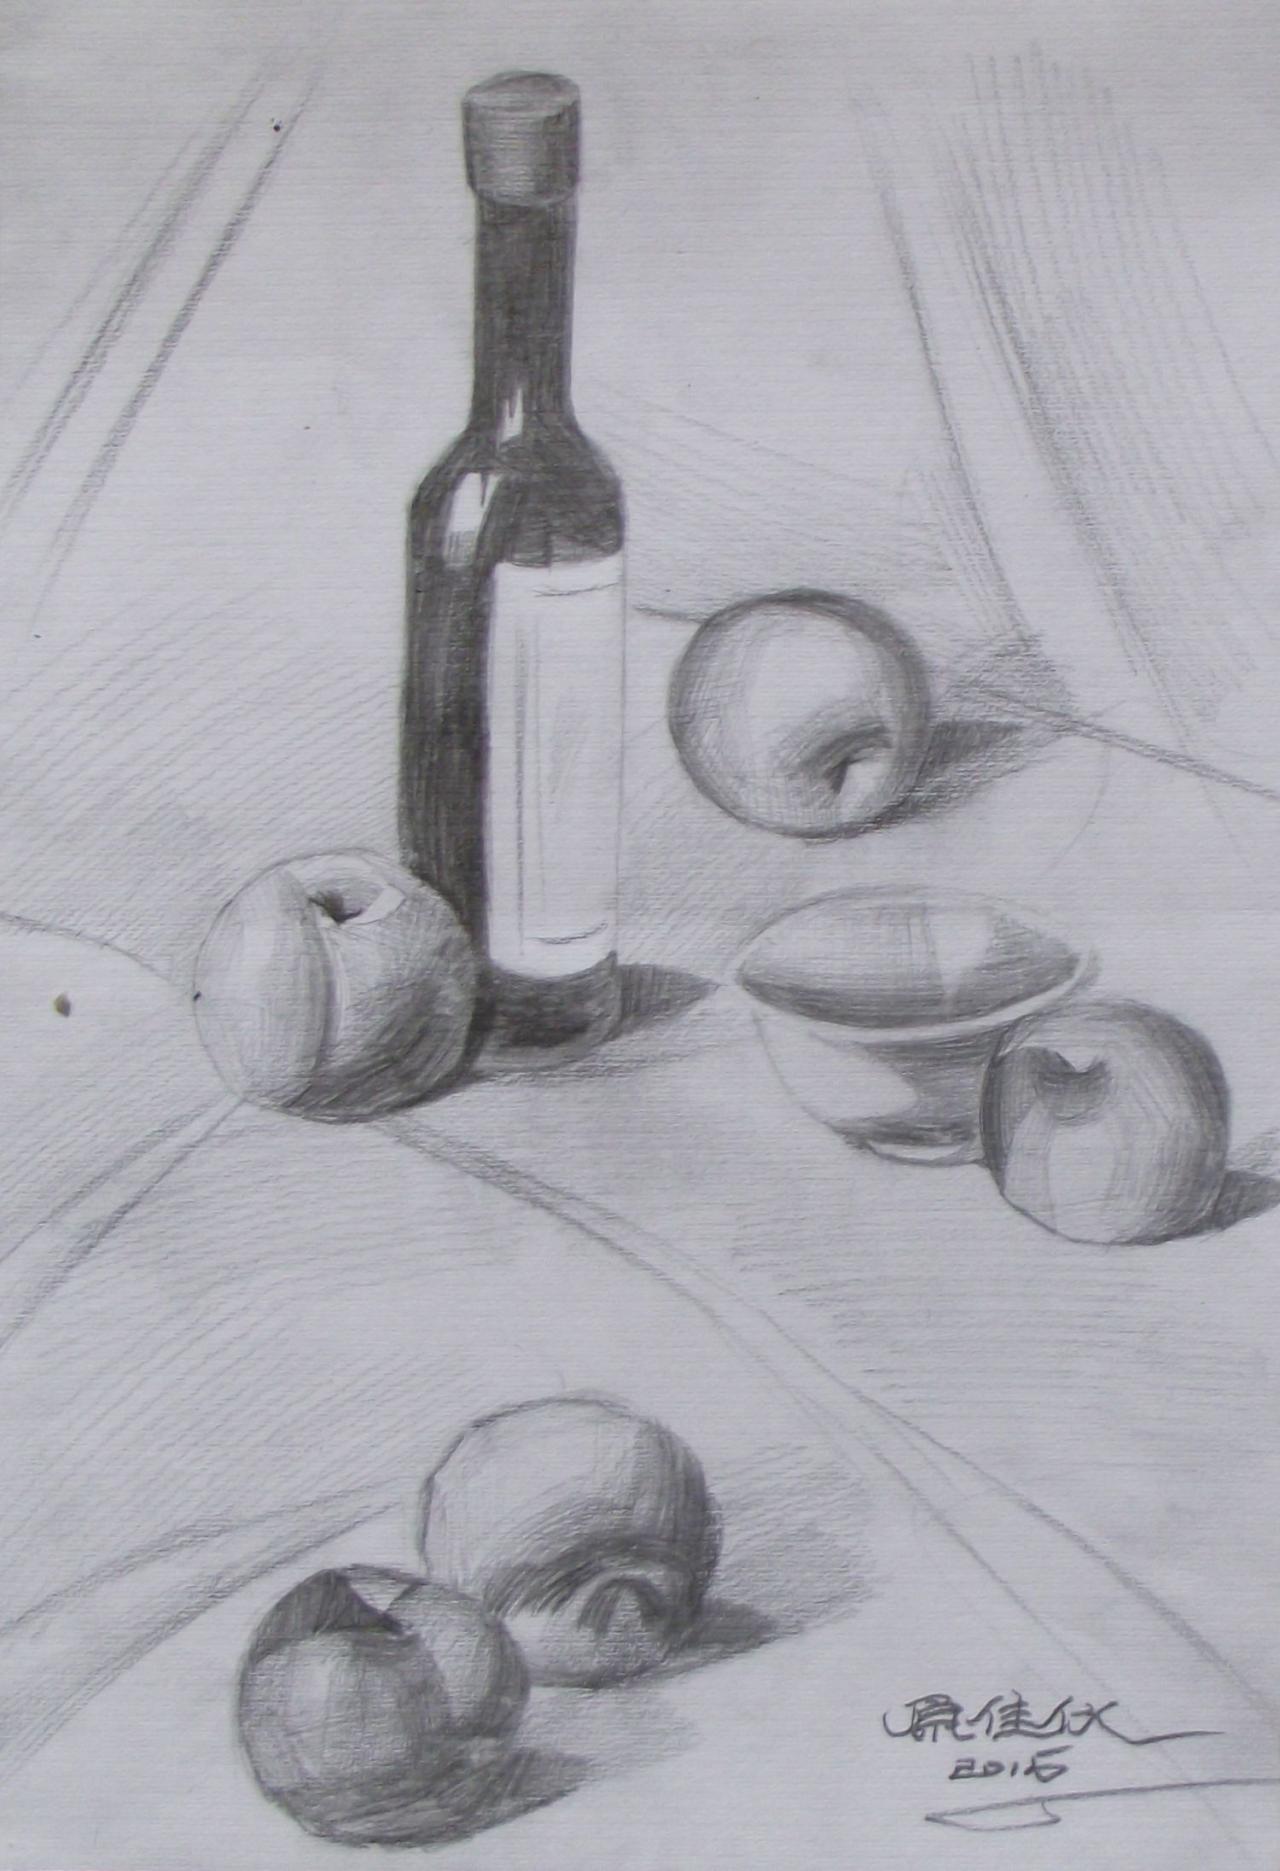 酒瓶、桃子、苹果、碗 静物素描 原佳仪画